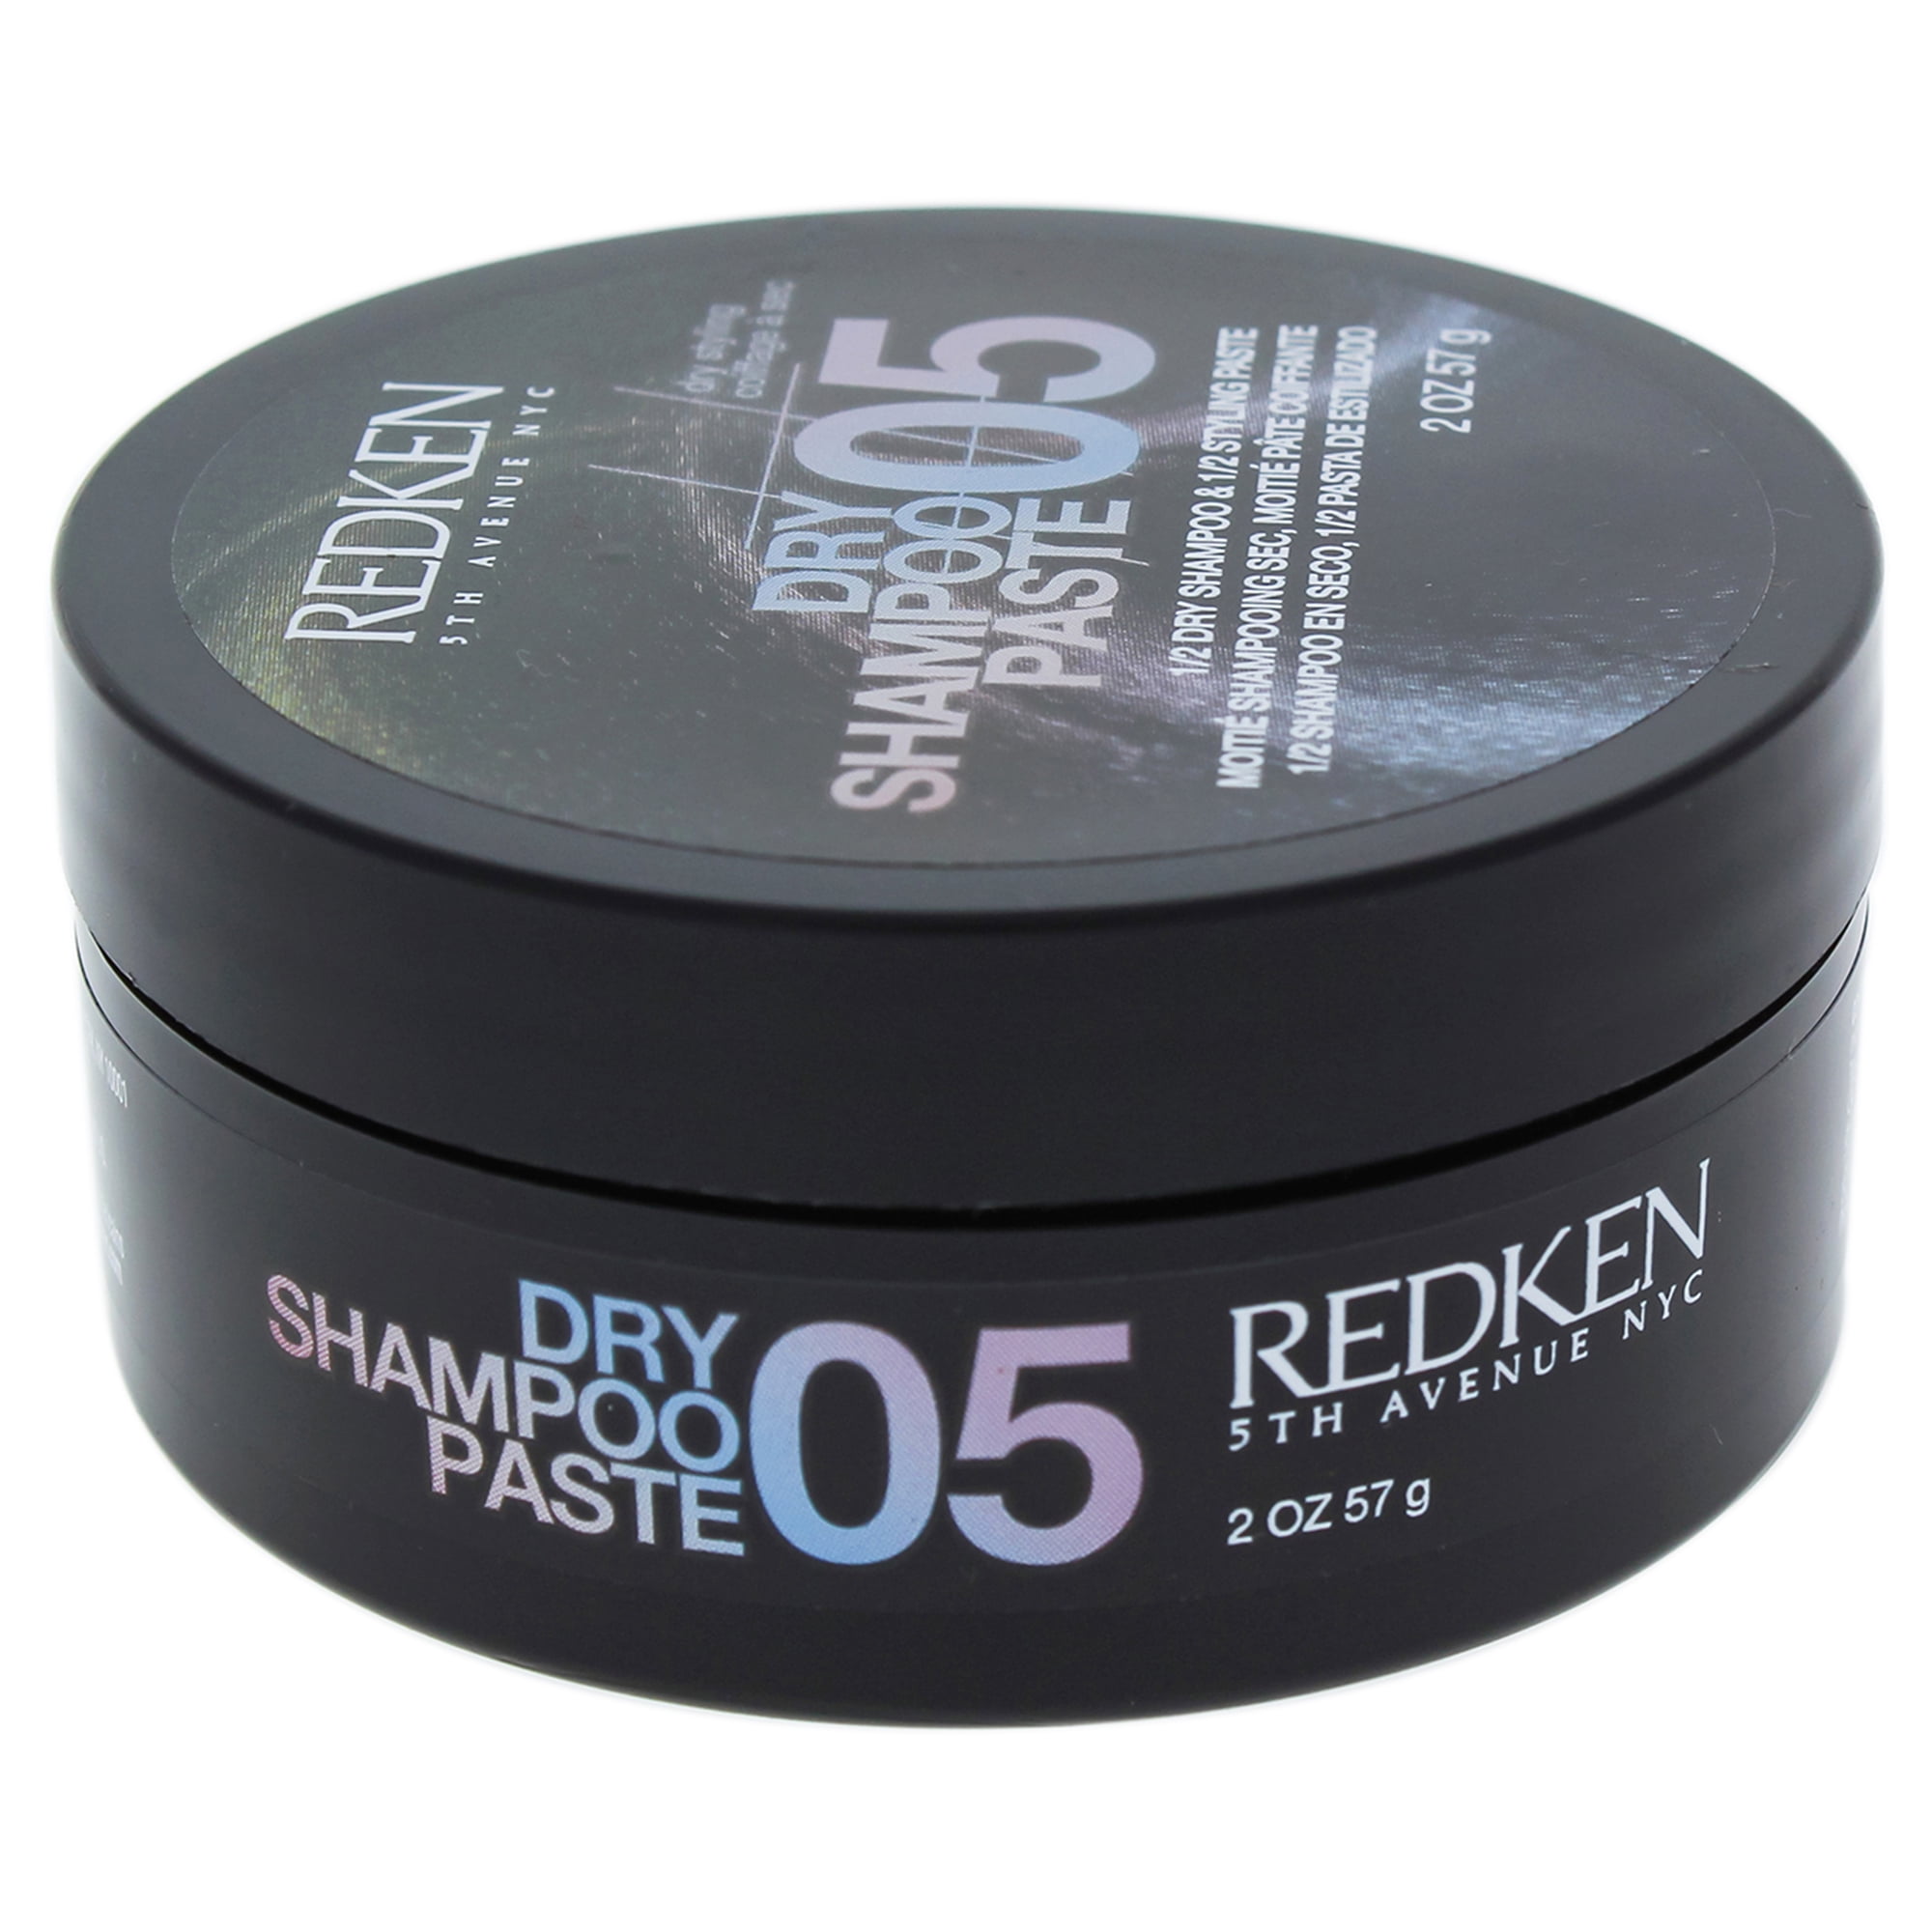 Redken Dry Shampoo paste 05. Redken Dry Shampoo paste. R+co Badlands Dry Shampoo paste. Volume Dry paste для волос. Сухой шампунь паста